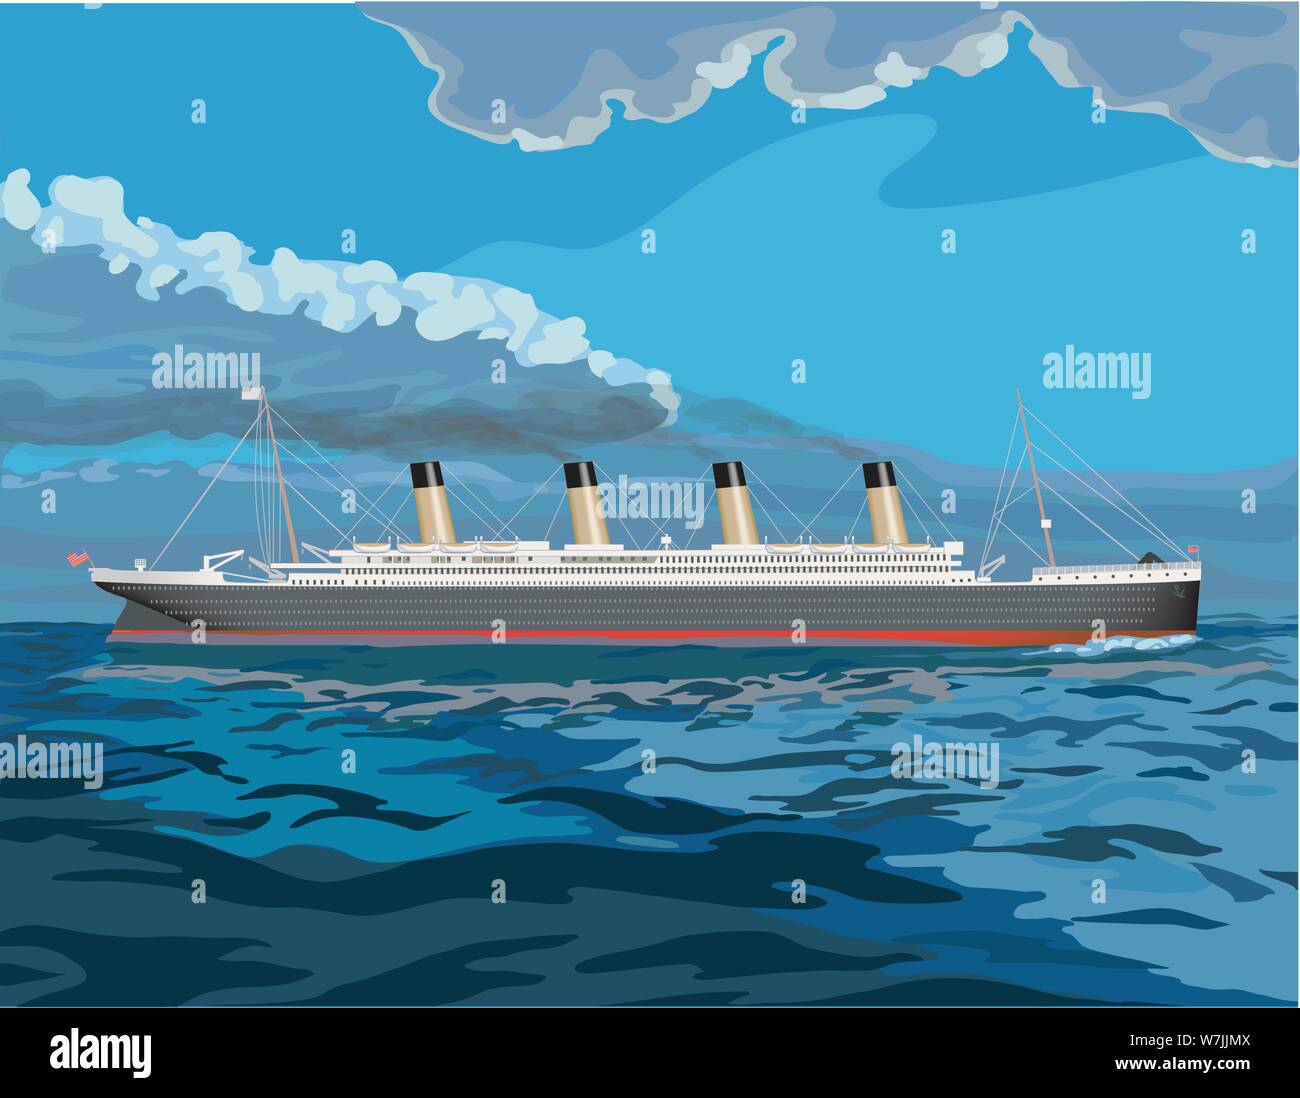 Titanic, vintage steam ship illustration avec la fumée qui sortait des cheminées c'est qu'il chugs sur la mer Illustration de Vecteur